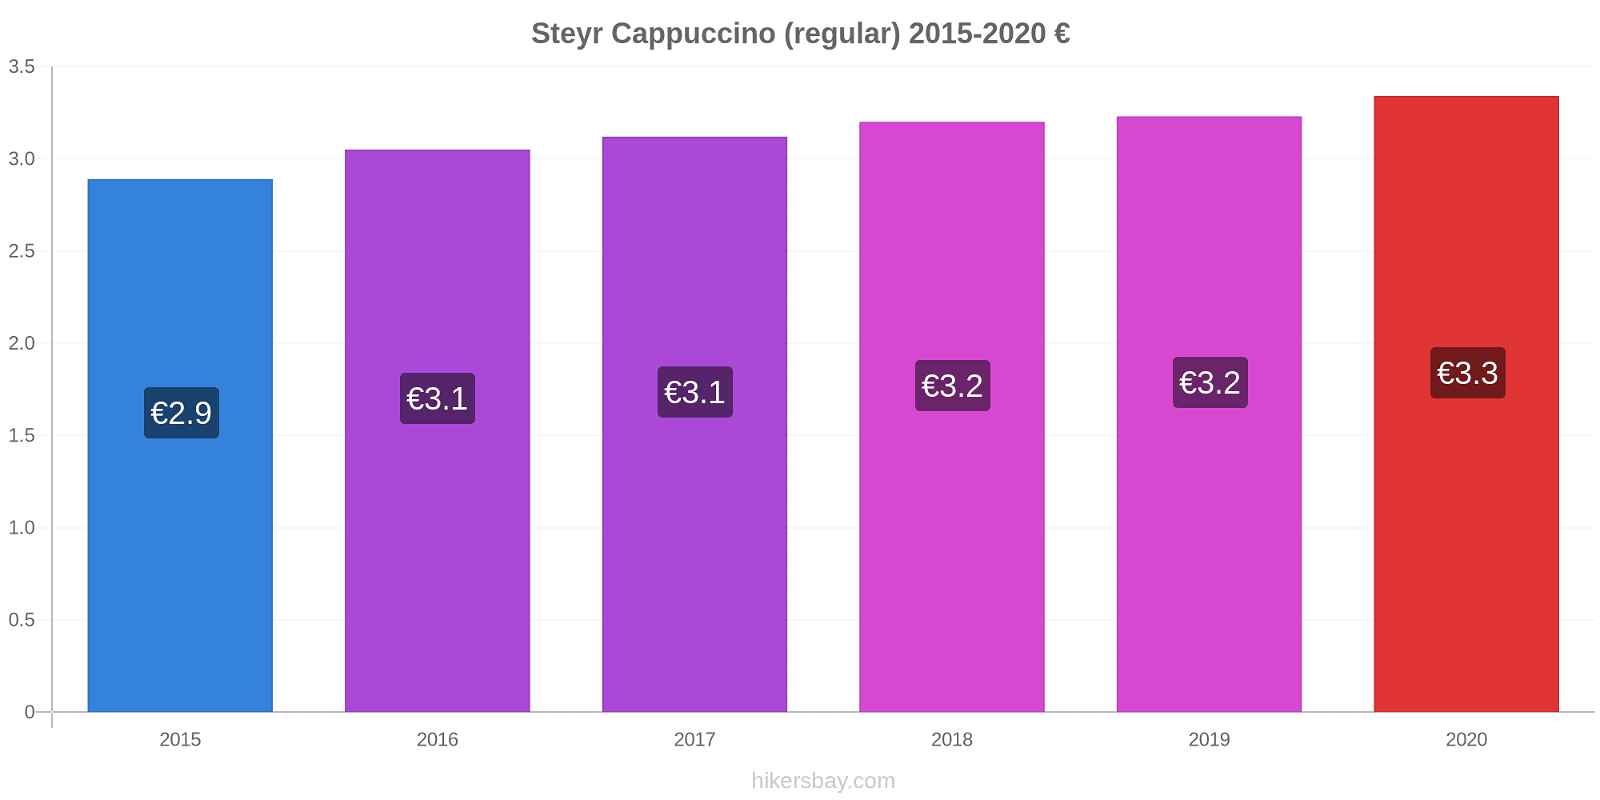 Steyr price changes Cappuccino (regular) hikersbay.com